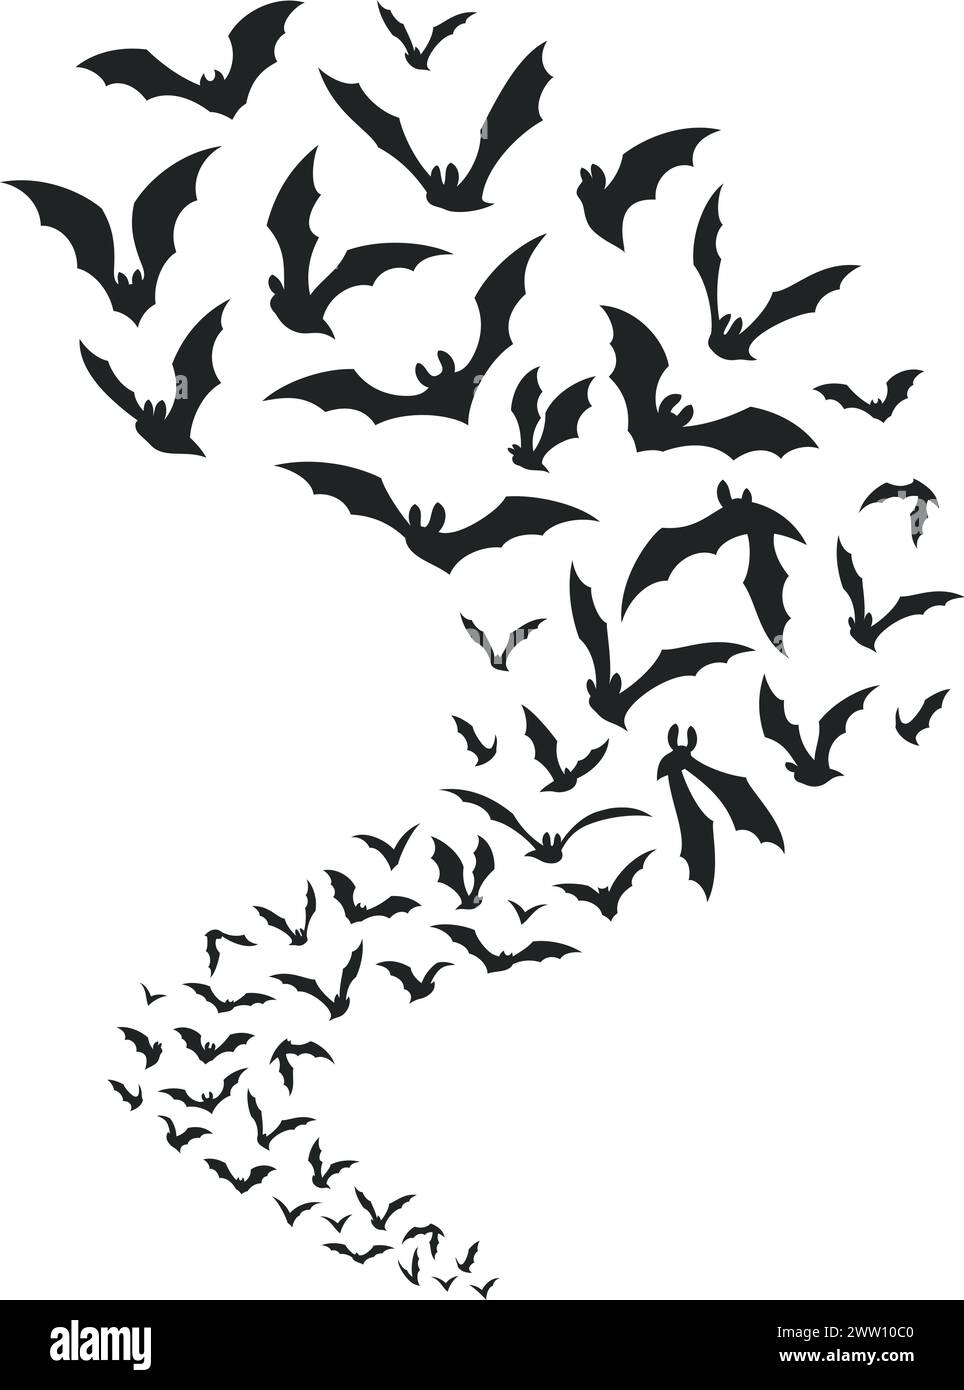 Les chauves-souris volantes essaient une silhouette noire. Décoration d'Halloween Illustration de Vecteur